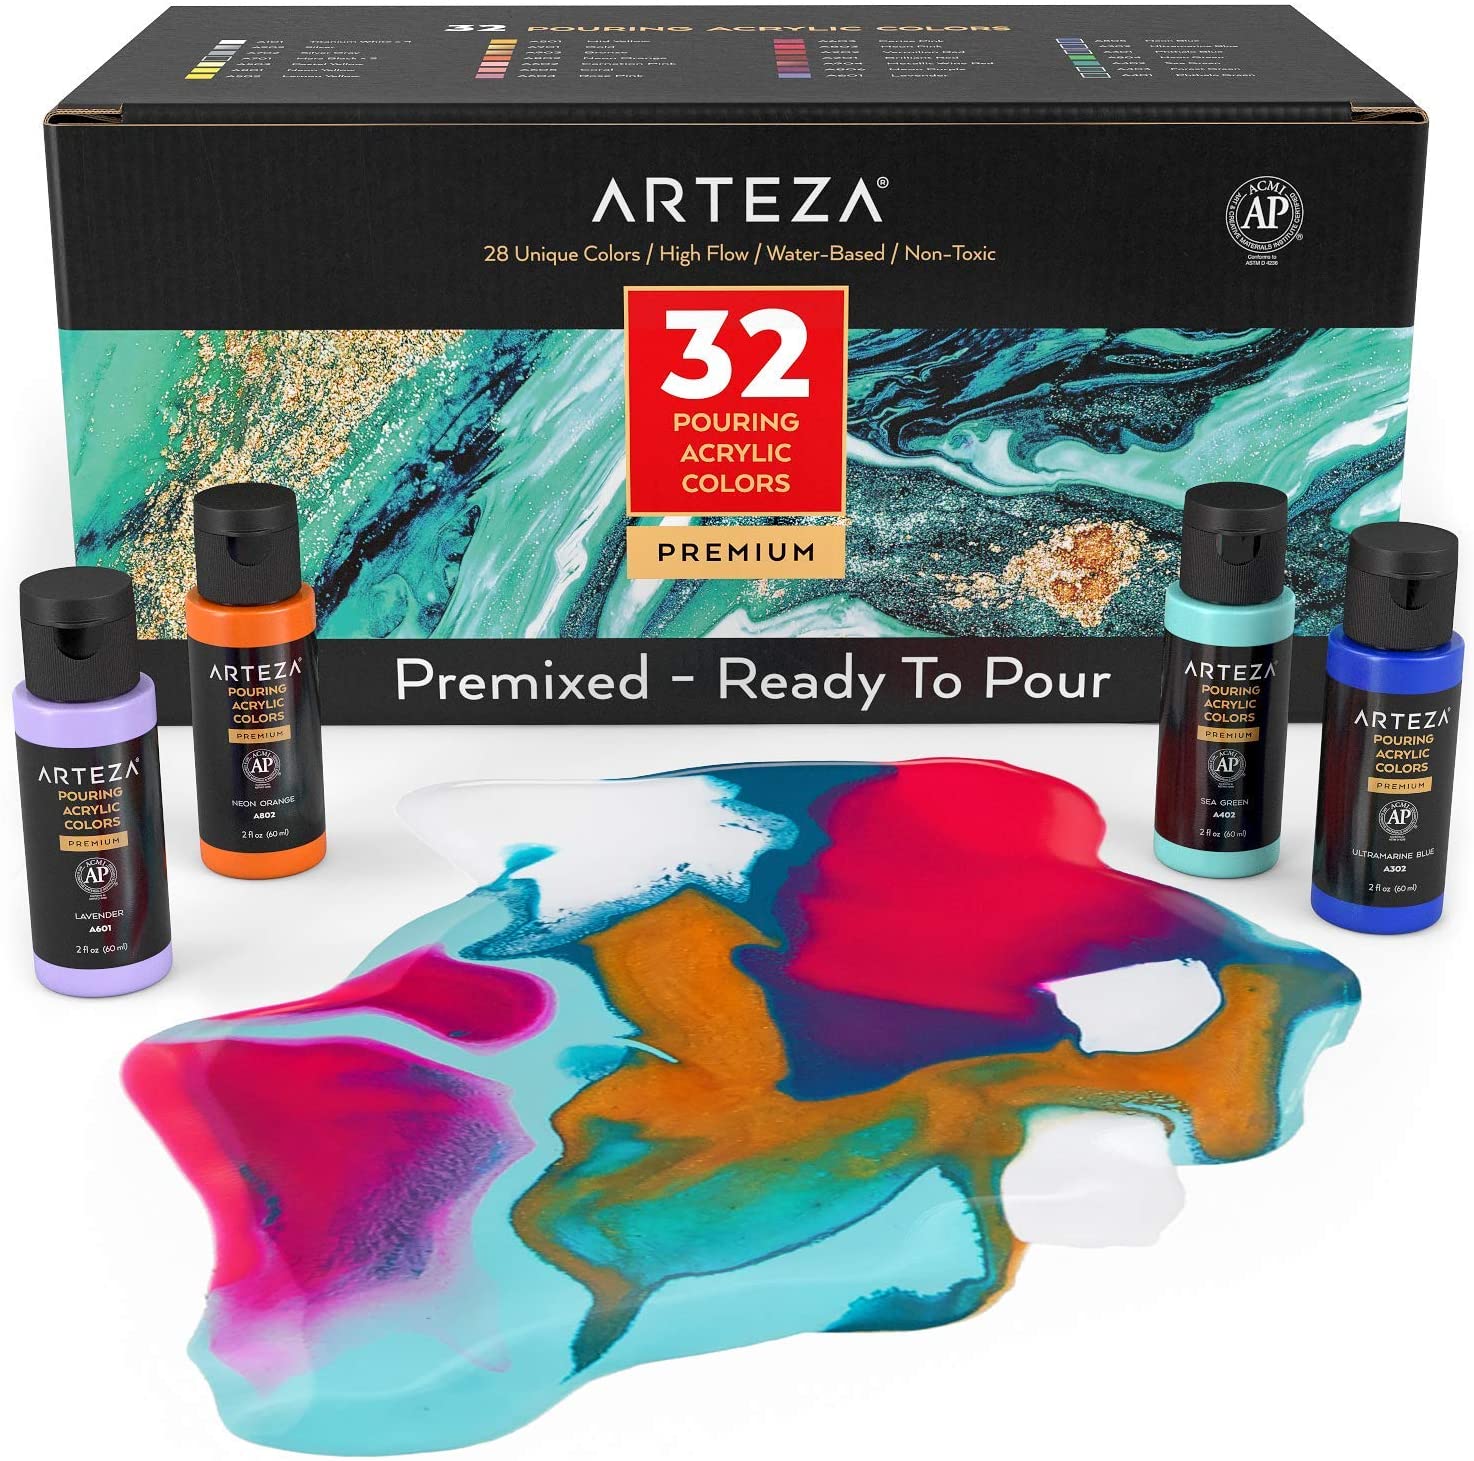 ARTEZA 2-Ounce High-Flow Acrylic Pour Paint, Set Of 32